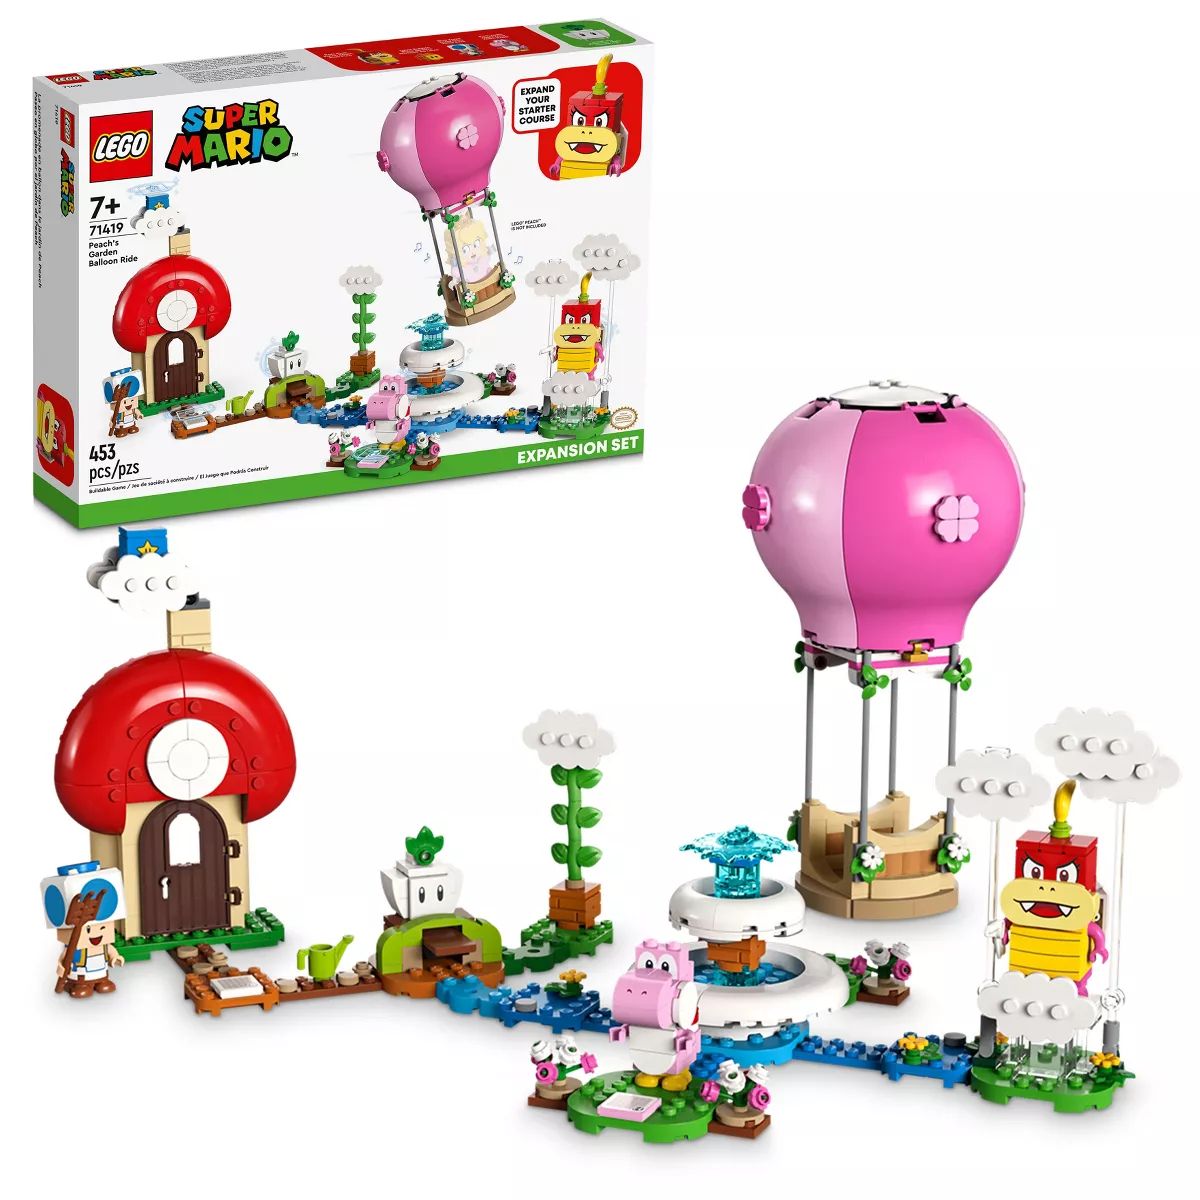 LEGO Super Mario Peach's Garden Balloon Ride Exp. Set 71419 | Target